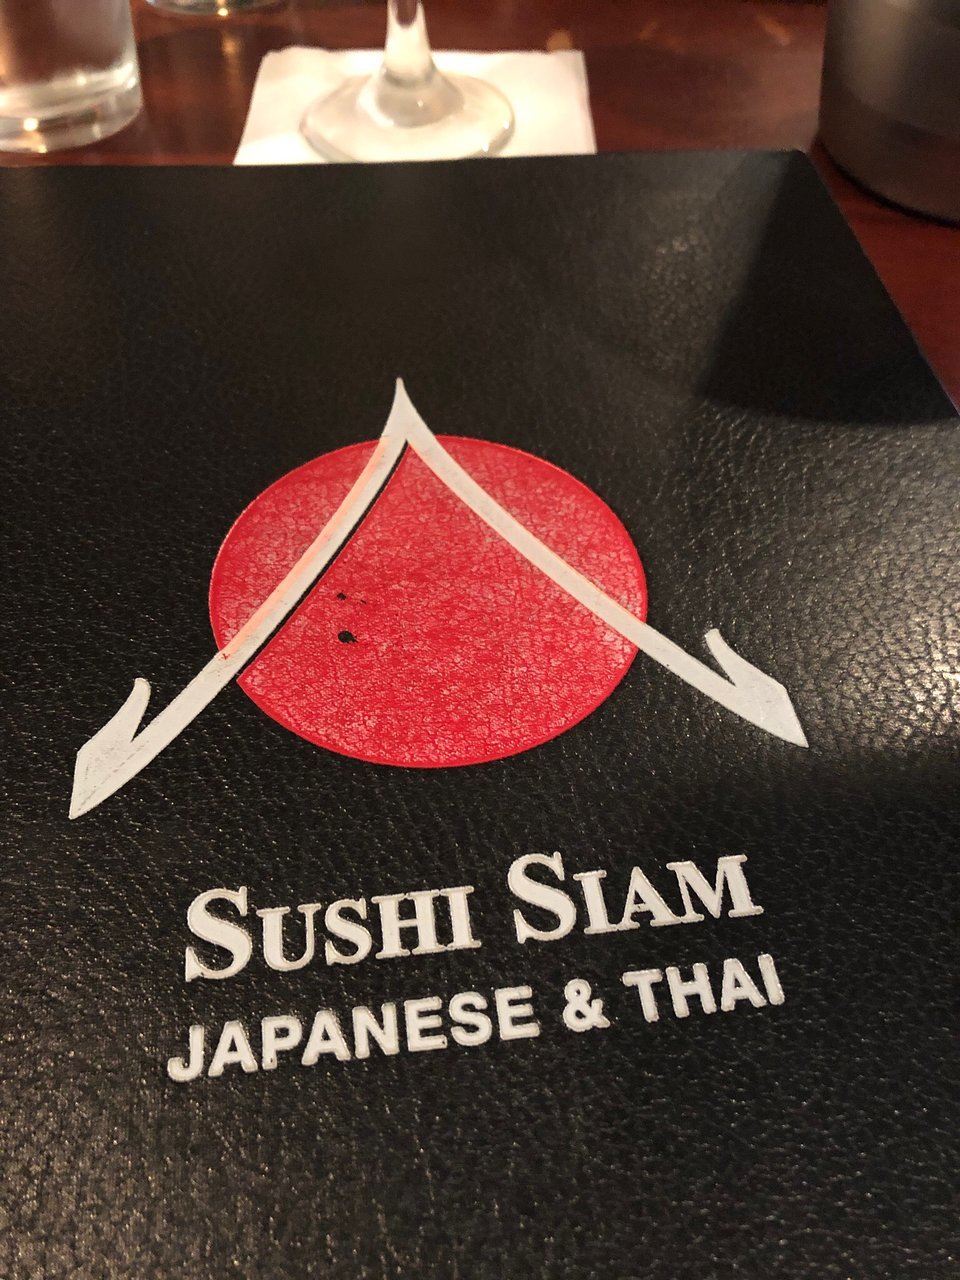 Sushi Siam